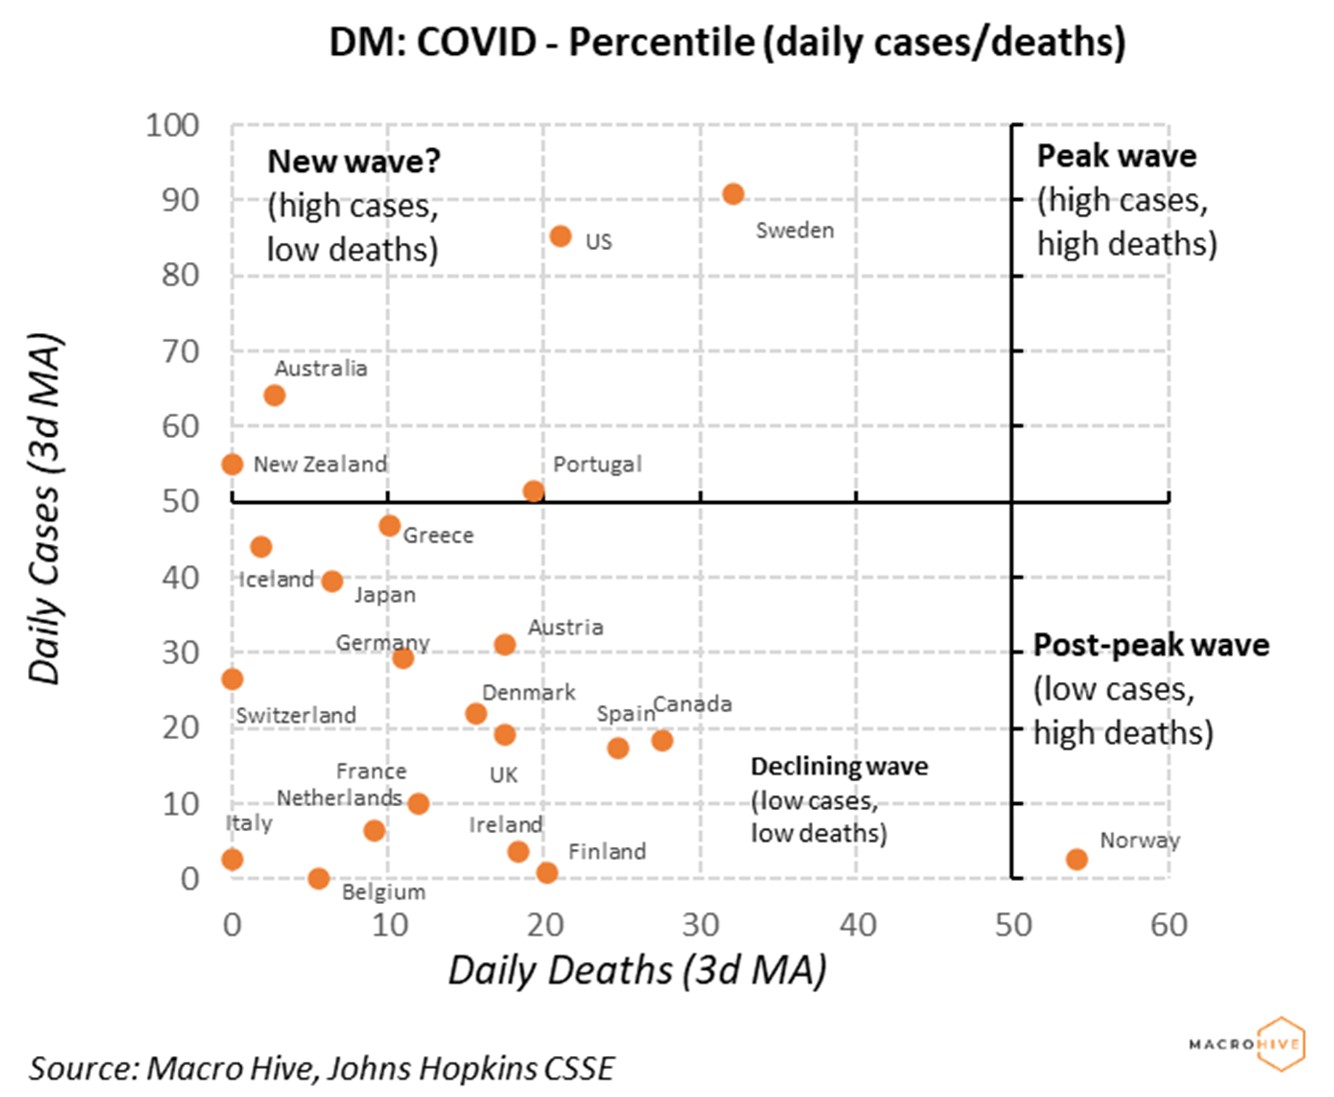 DM COVID Percentile